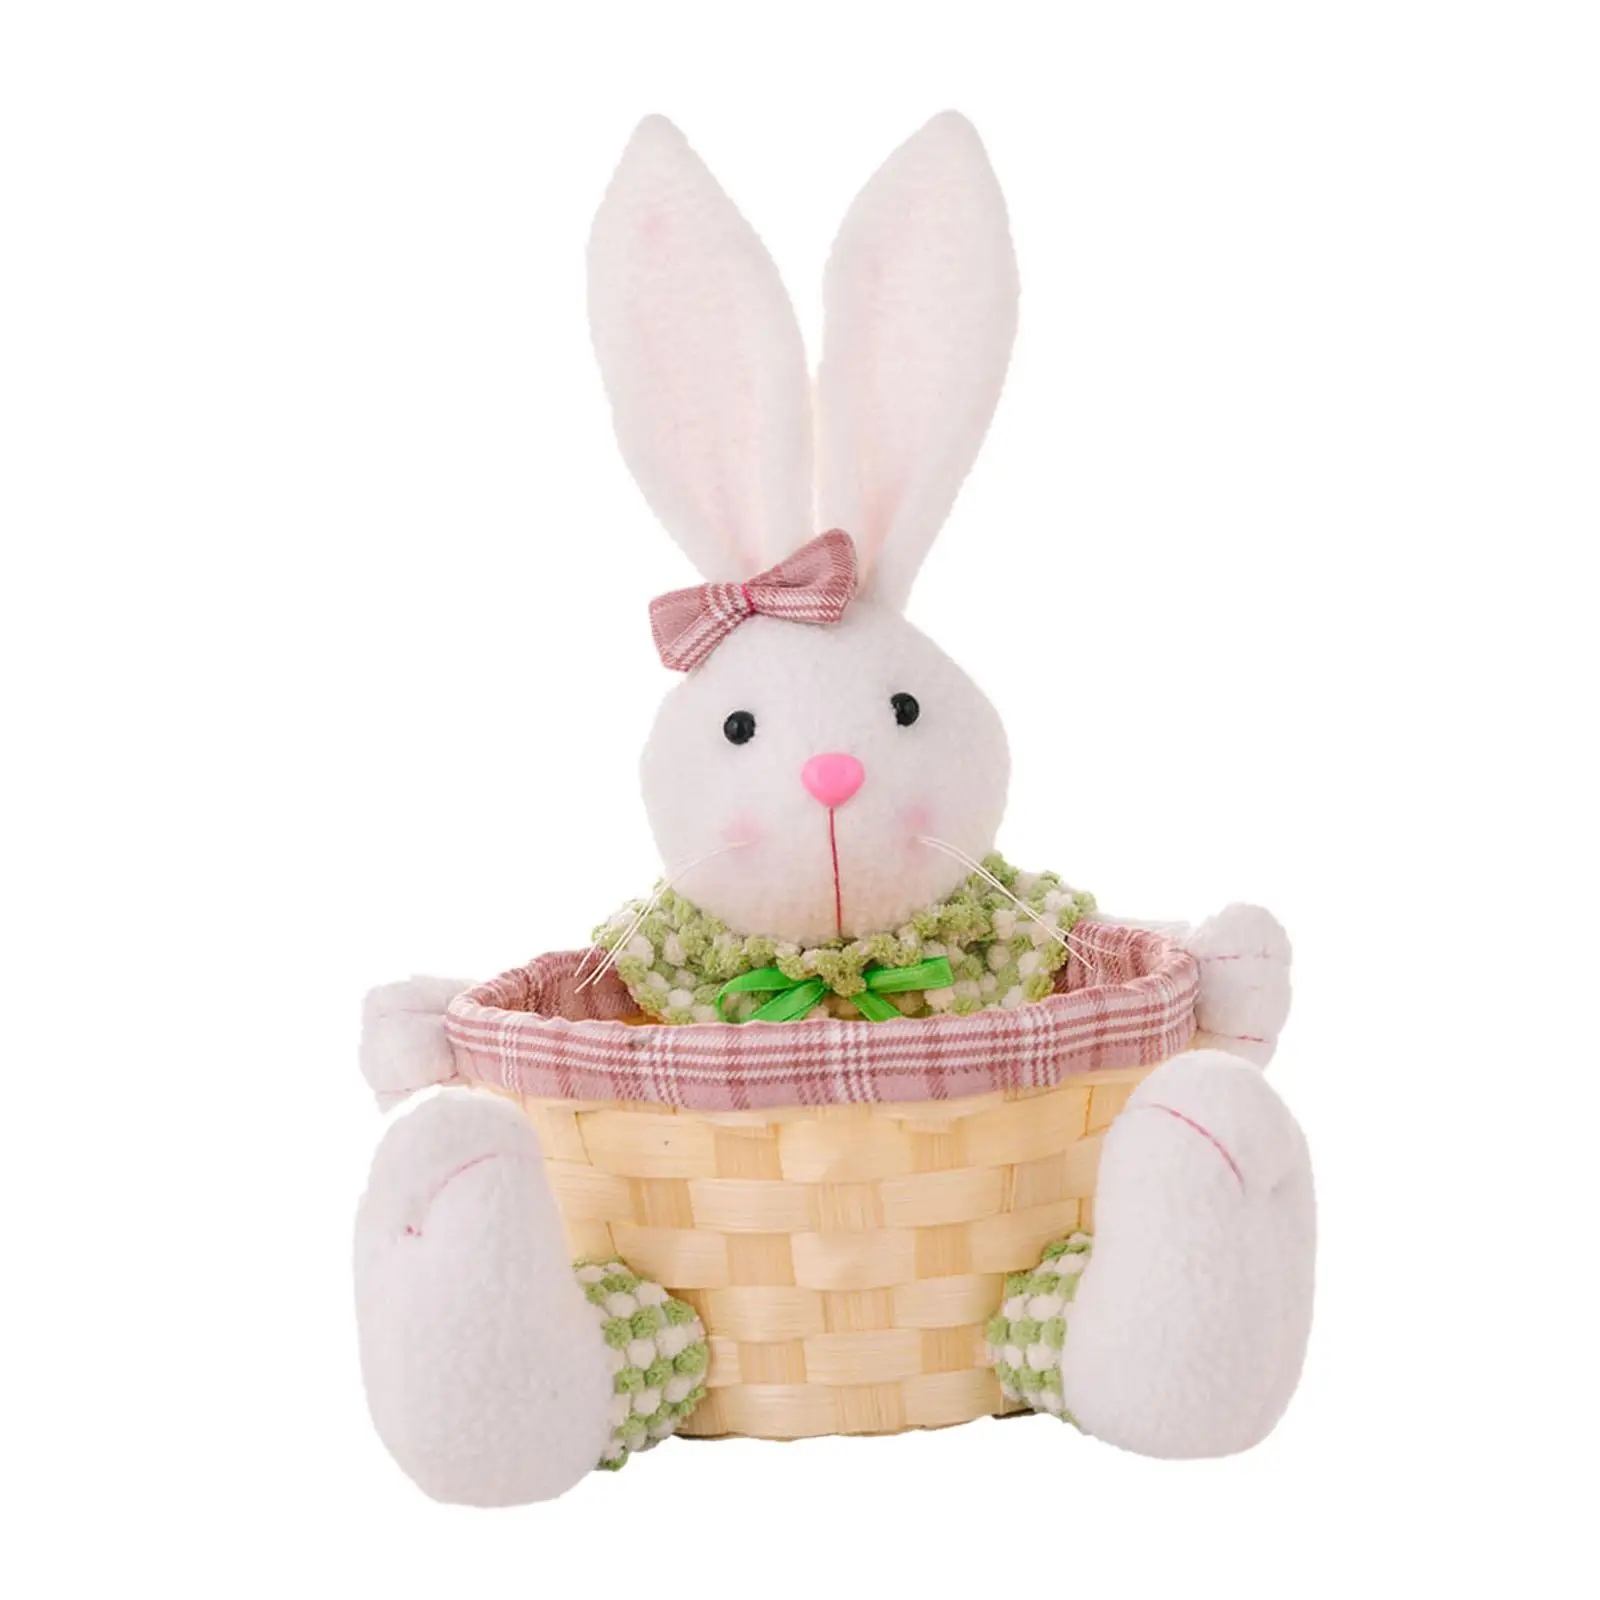 Easter Basket Handmade Gifts Basket Easter Eggs Container Desktop Ornament Toy Storage Picnic Hamper for Boys Girls Kids